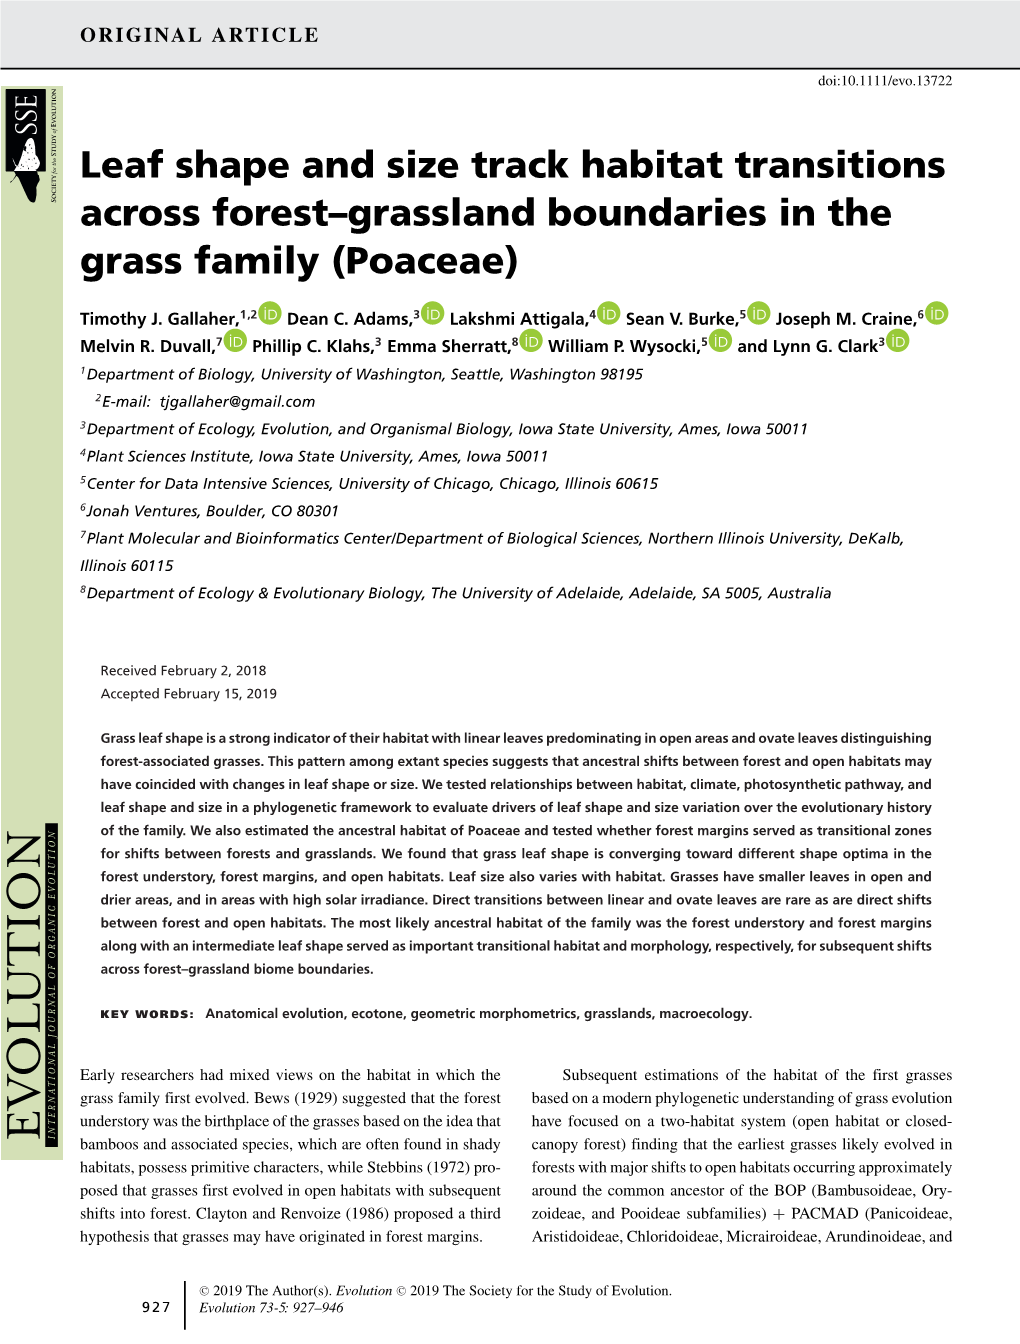 Leaf Shape Tracks Transitions Across Forest-Grassland